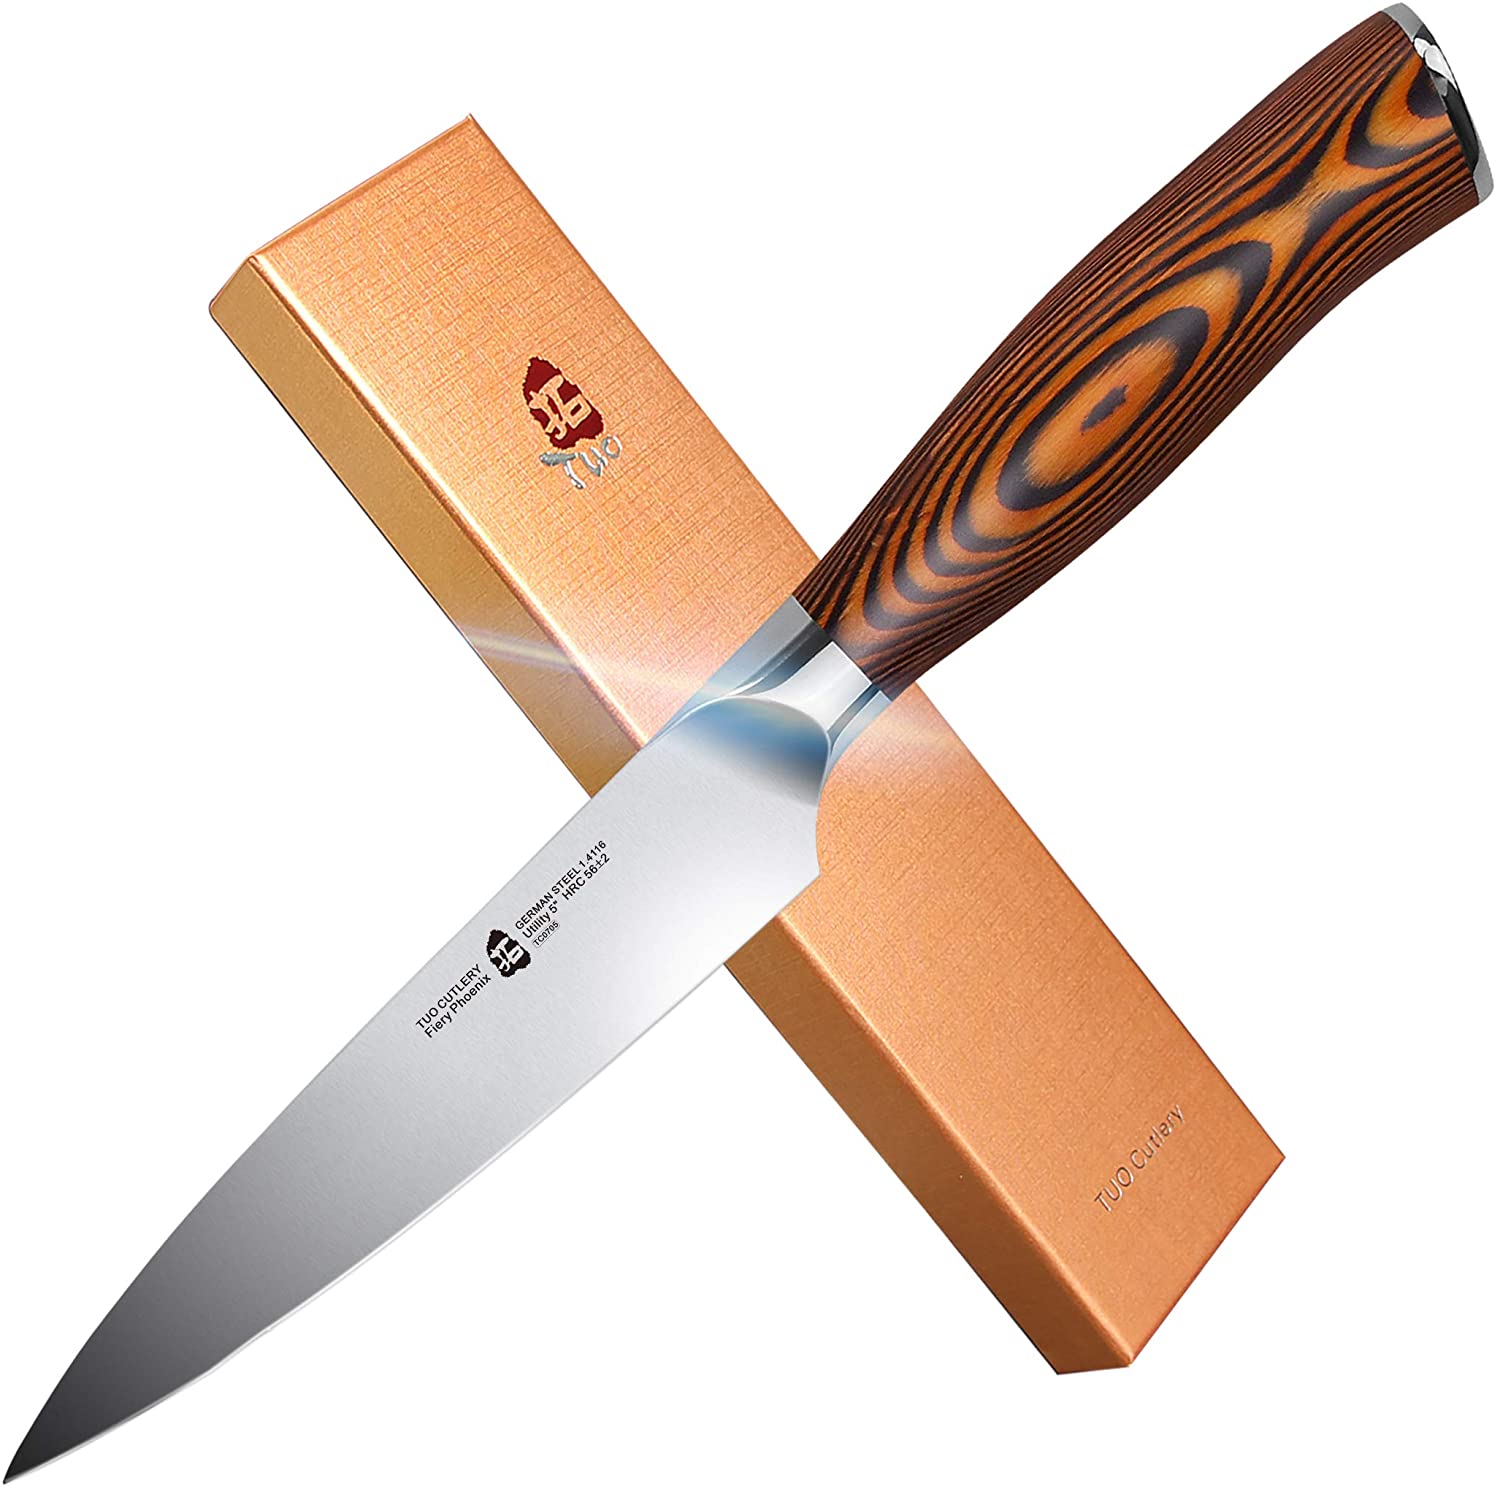 TUO Cutlery Fiery Series German Steel Utility Knife, 5-Inch